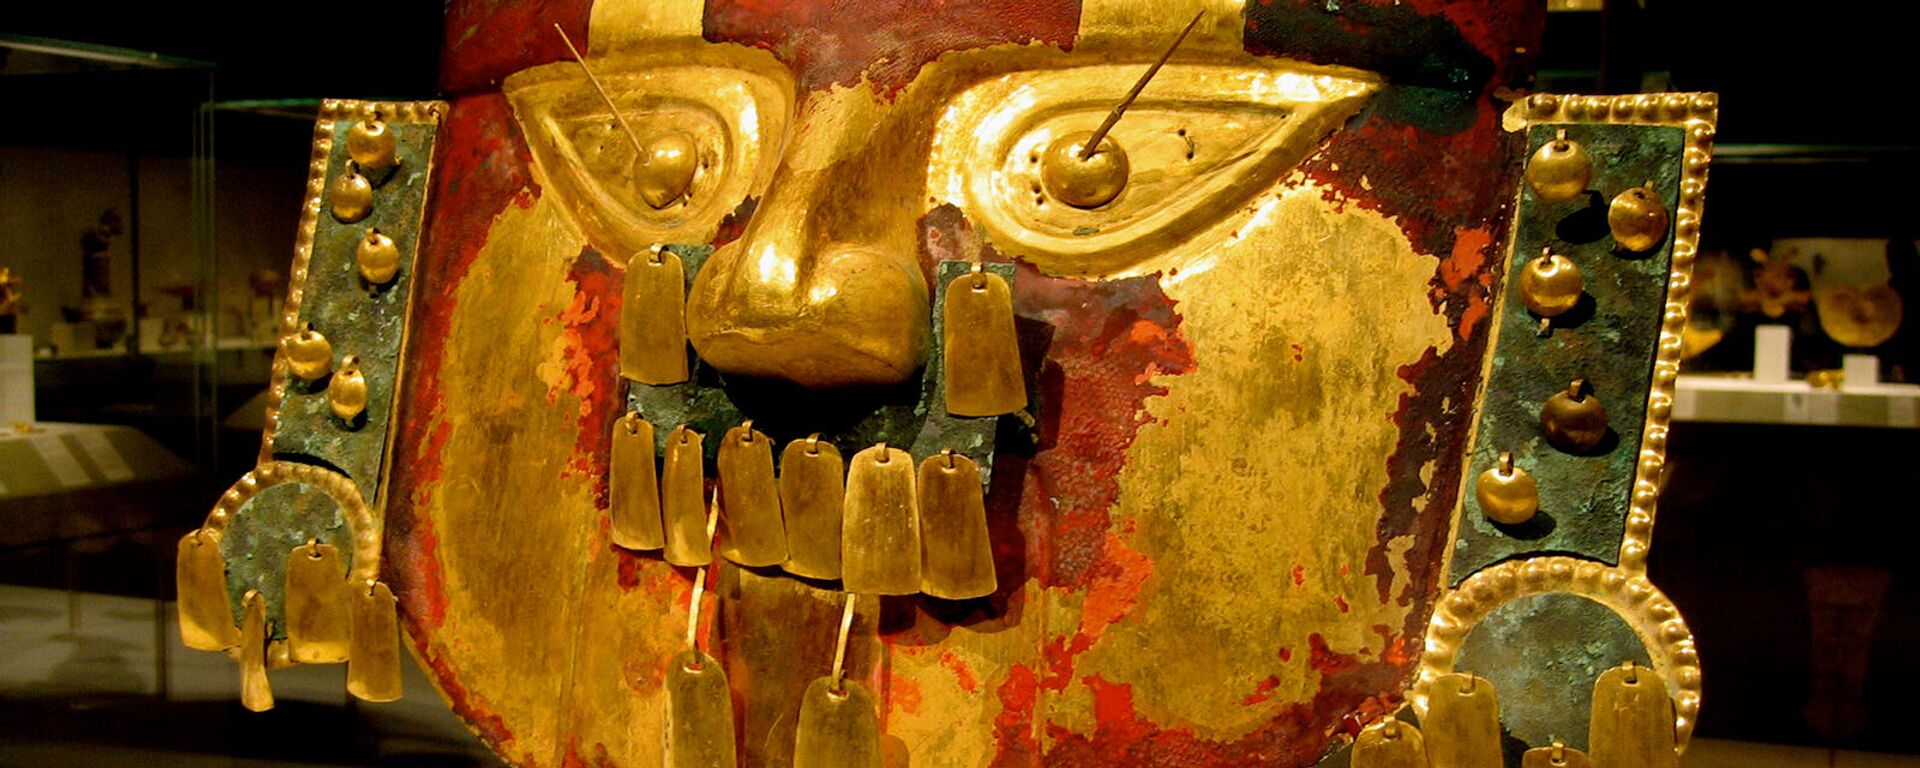 Погребальная маска IX-XI века в Метрополитен-музей - Sputnik Армения, 1920, 28.10.2021